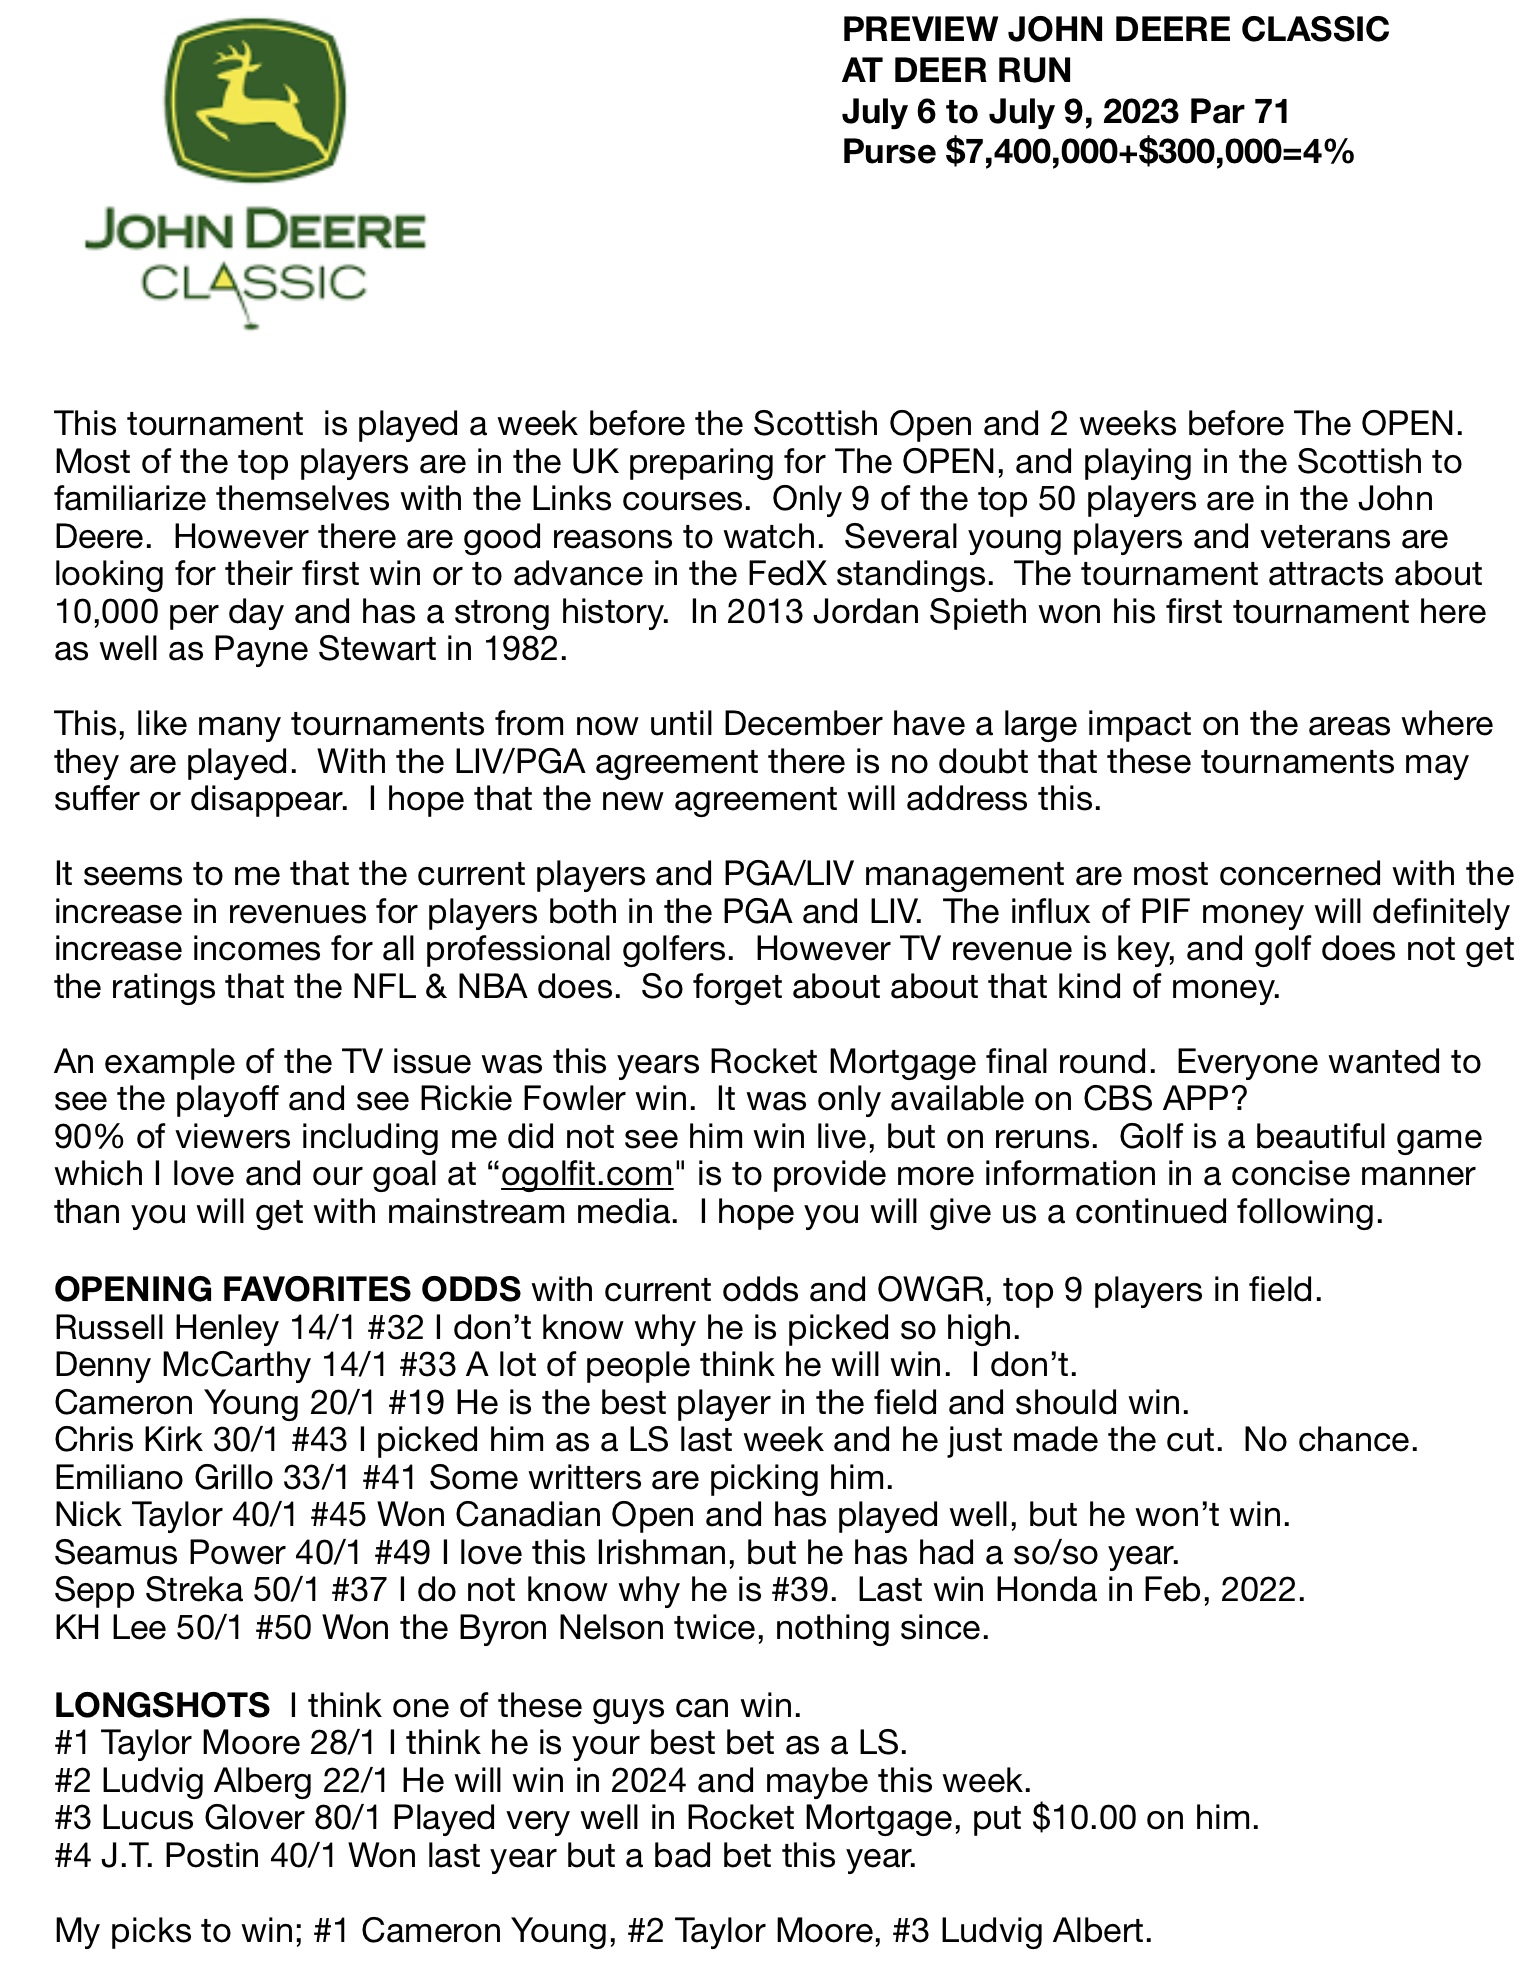 2022 John Deere Classic: How to watch, TV schedule, tee times